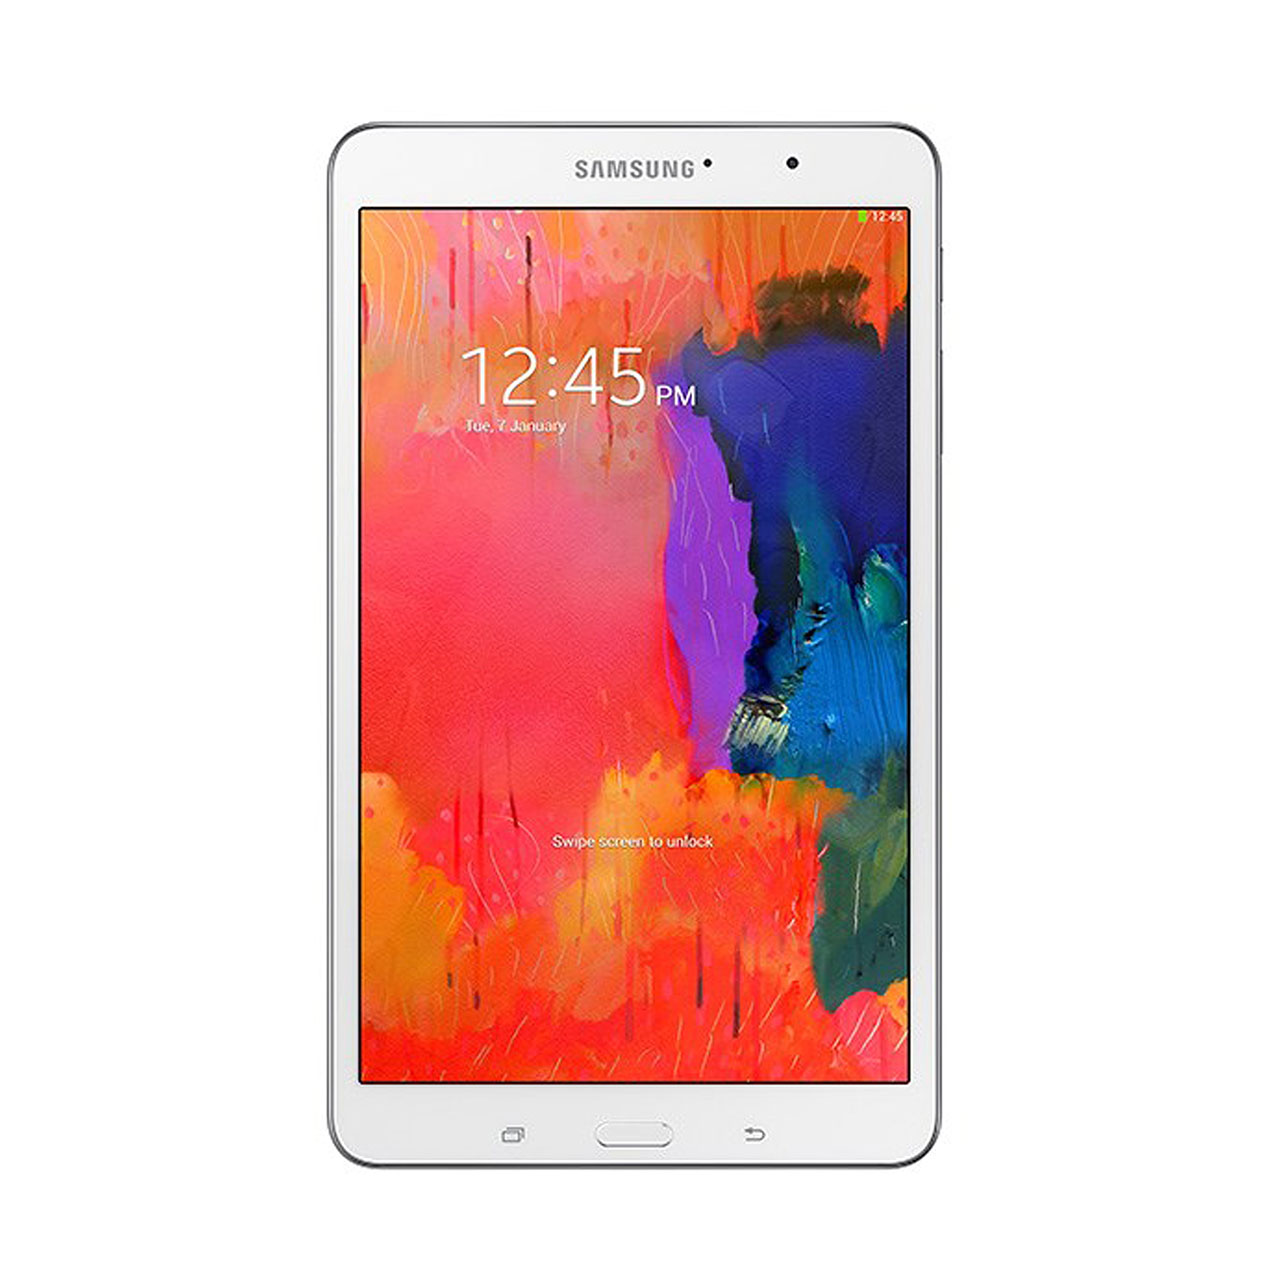 تبلت سامسونگ مدل Galaxy Tab Pro 8.4 SM-T325 ظرفیت 16 گیگابایت